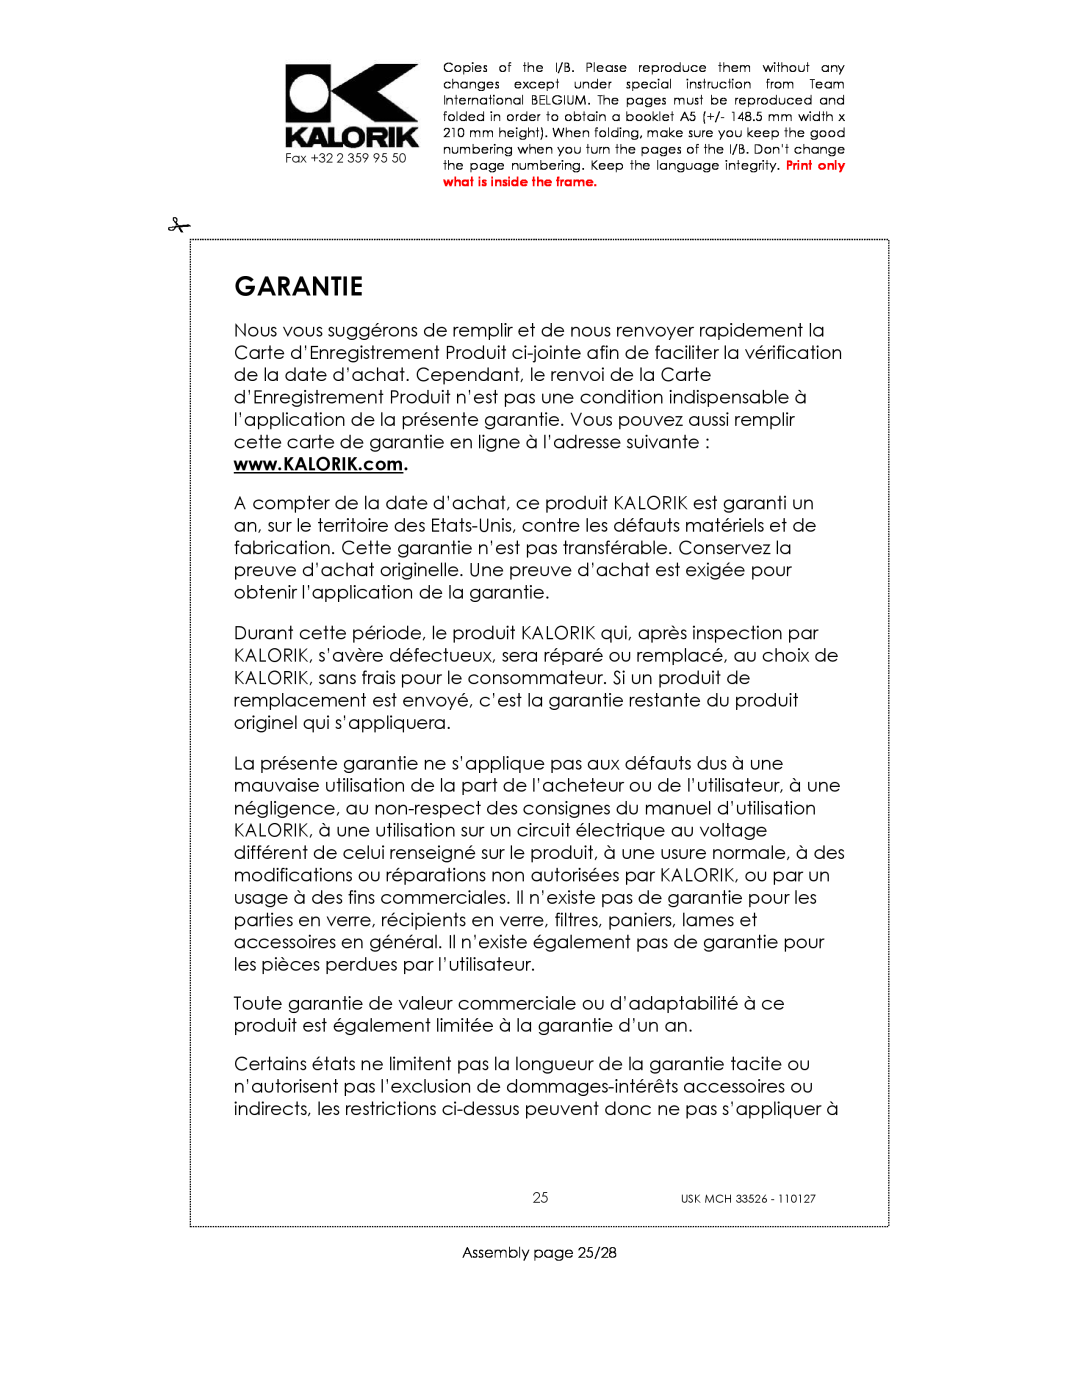 Kalorik USK MCH 33526 manual Garantie, Assembly page 25/28 